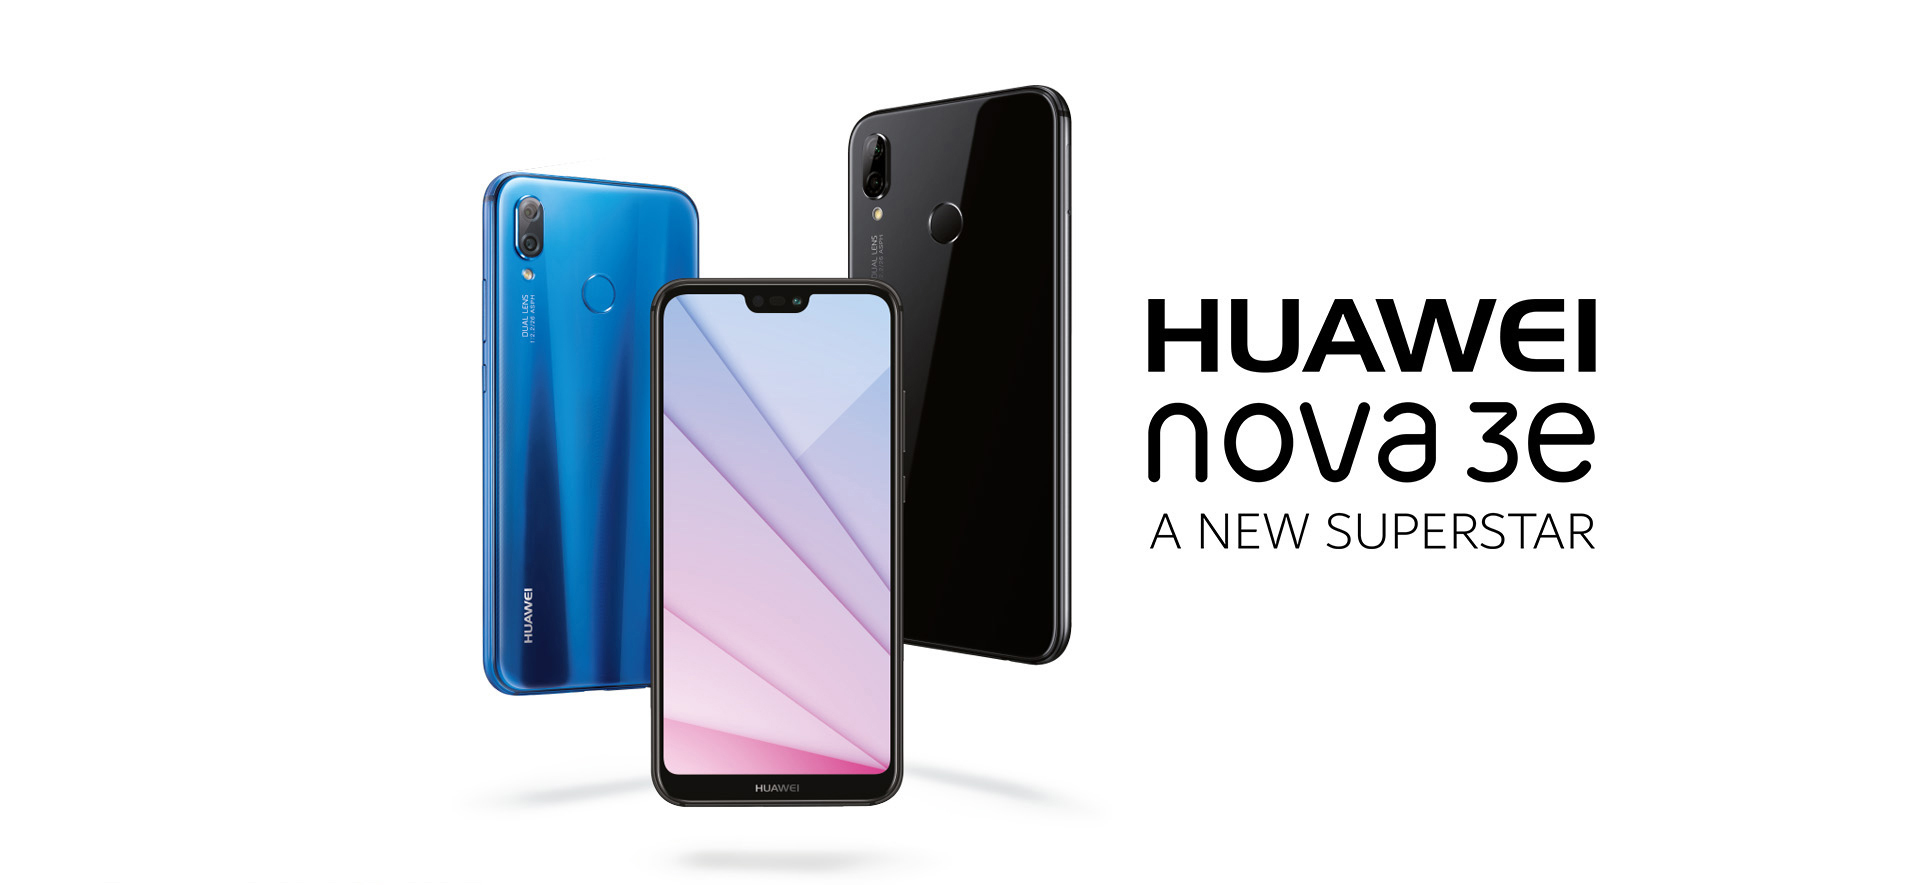 Huawei Nova 3E ön kamerada bir ilke imza atıyor